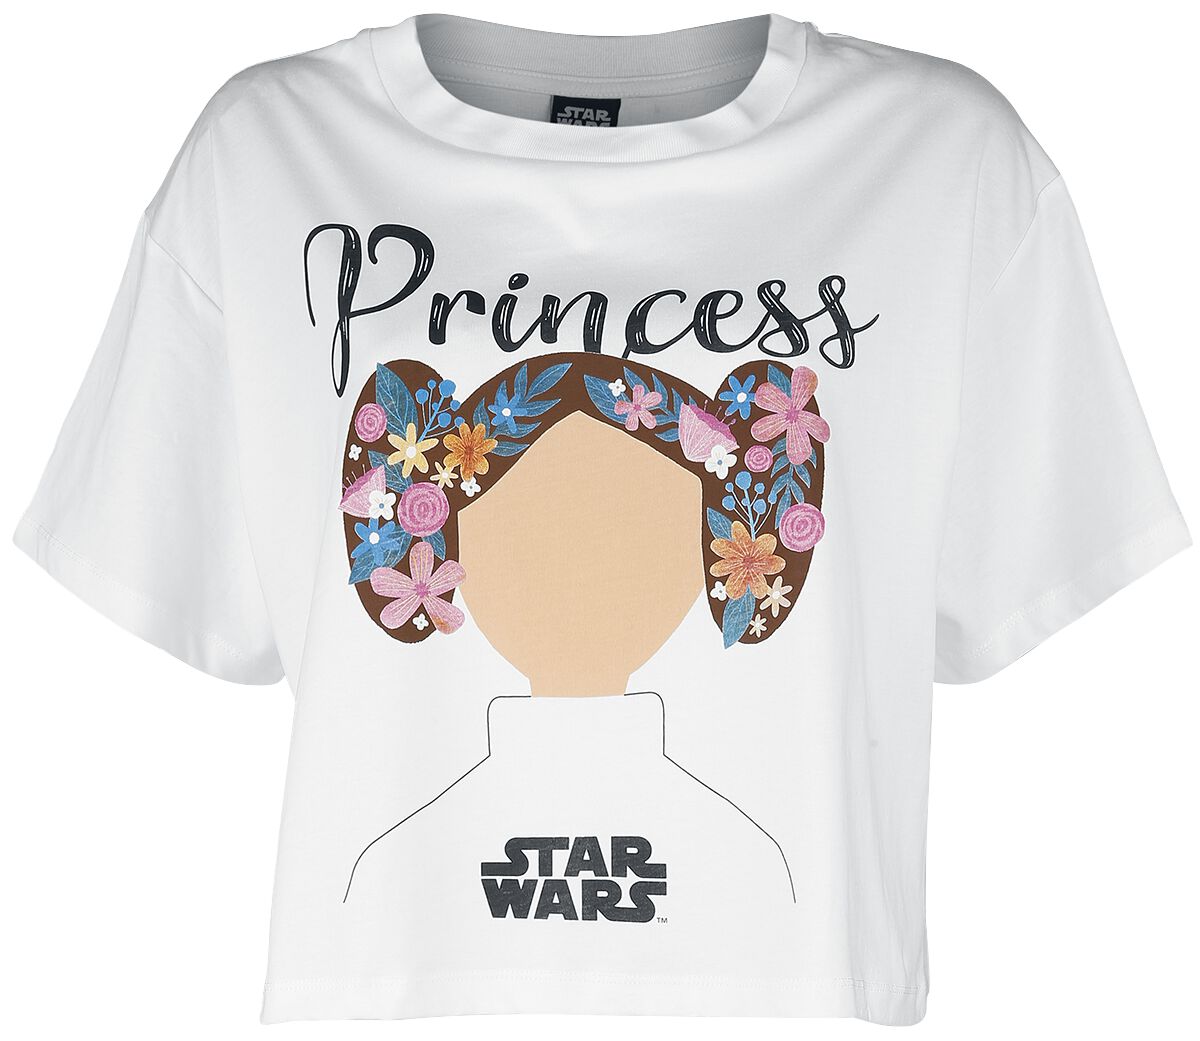 Star Wars Star Wars - Princess Lea T-Shirt weiß in M